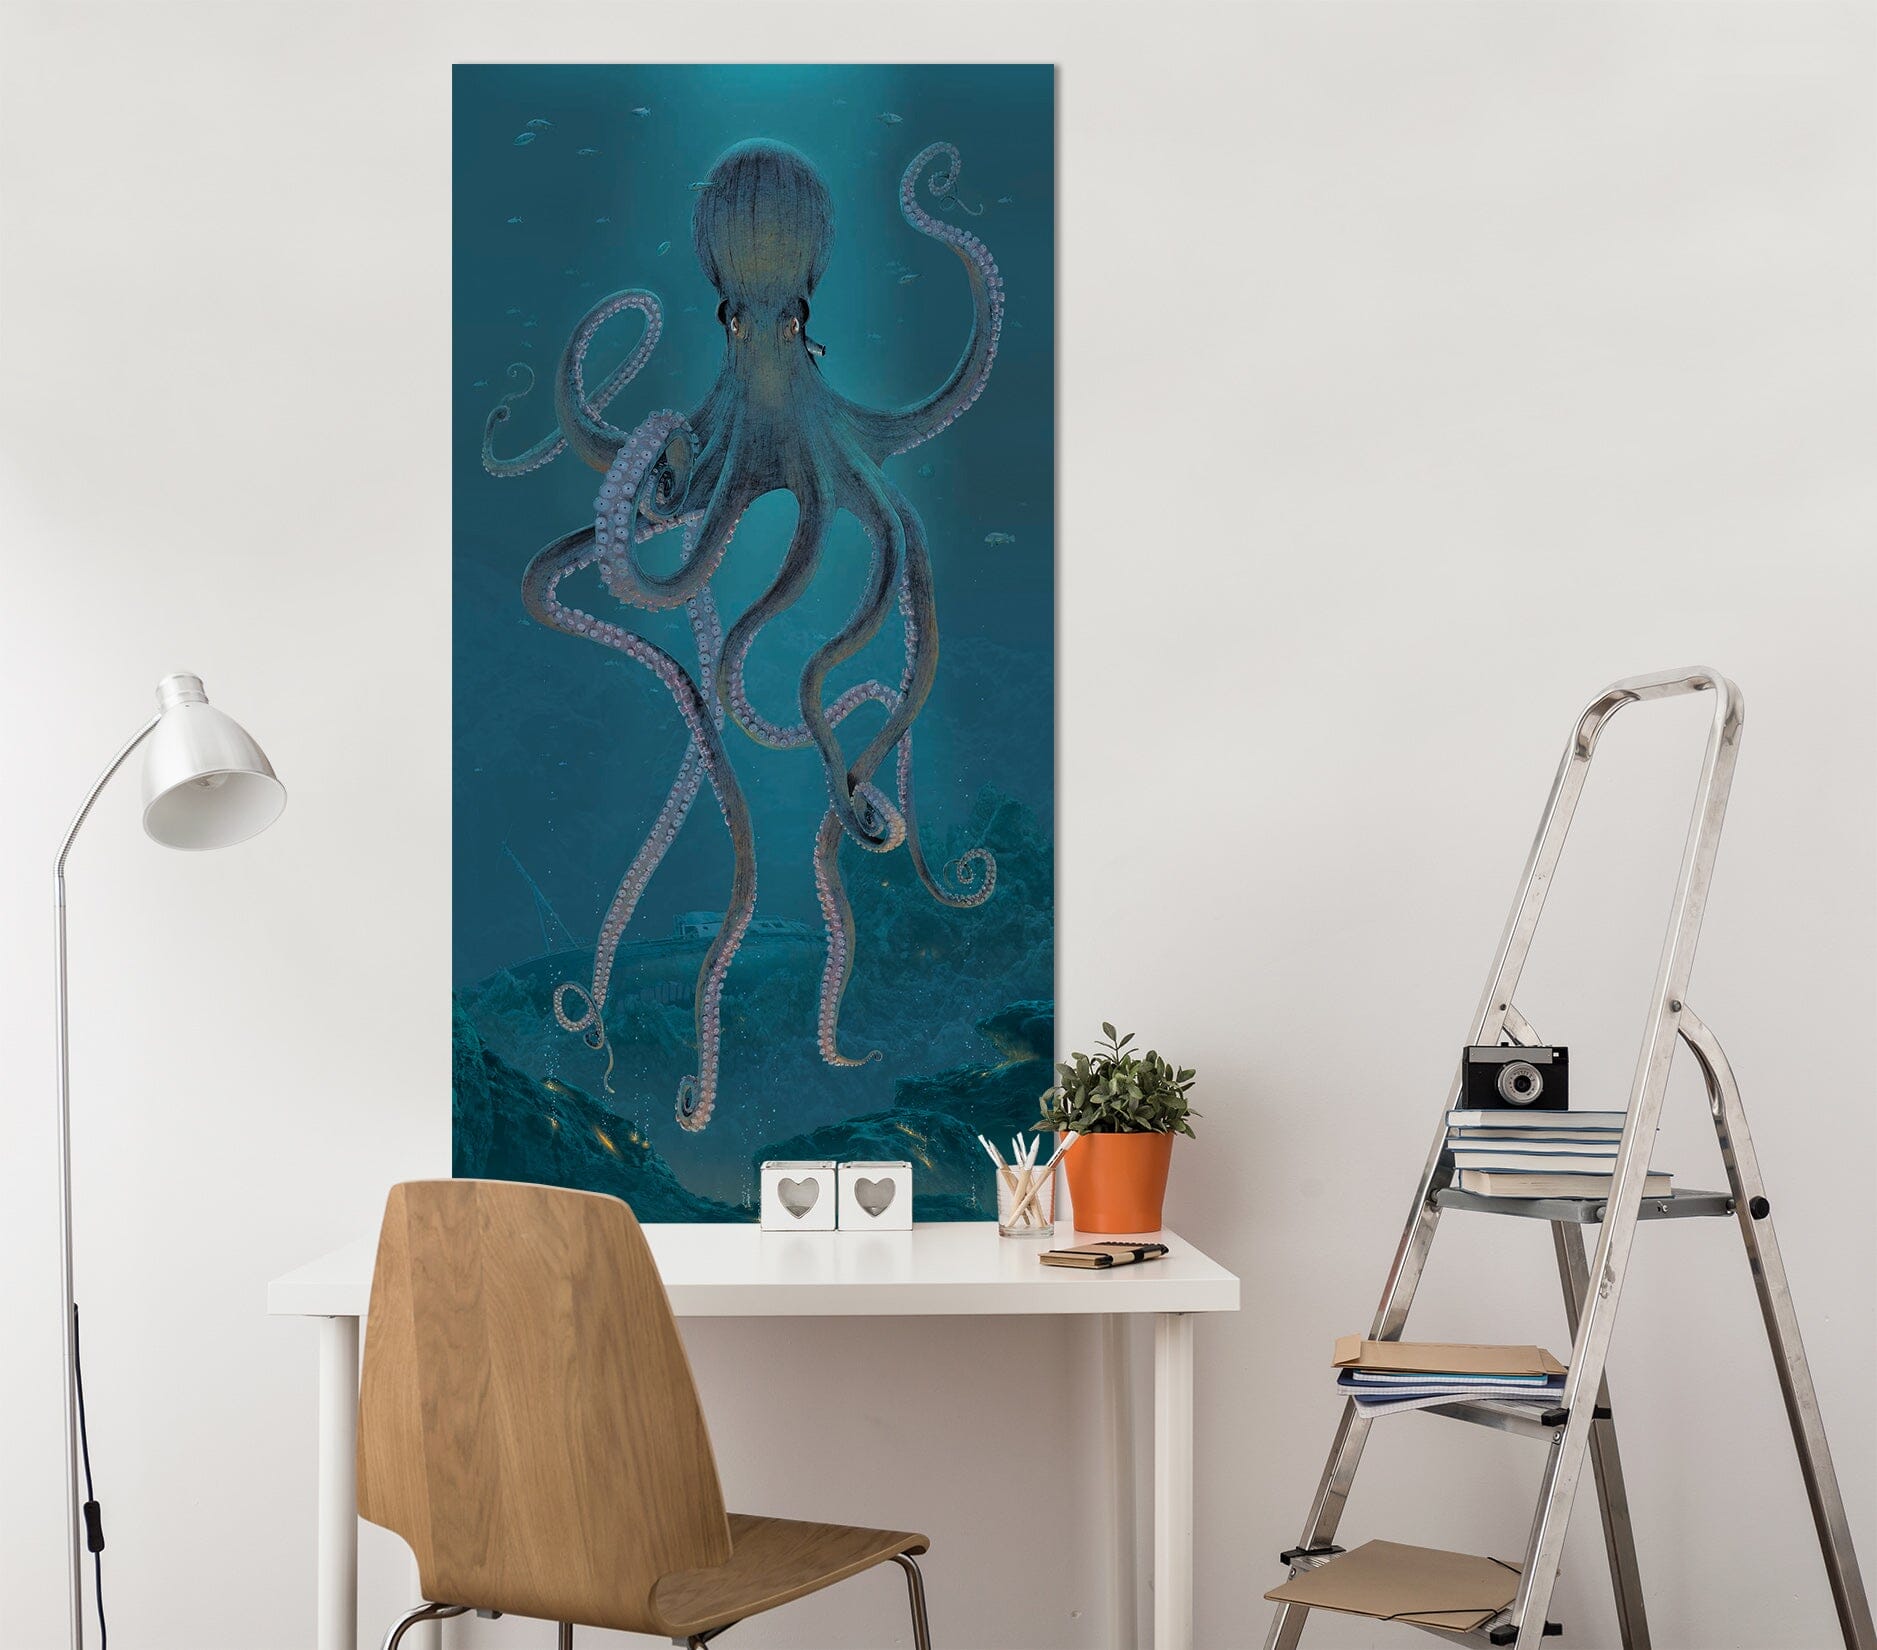 3D Giant Octopus 039 Vincent Hie Wall Sticker Wallpaper AJ Wallpaper 2 